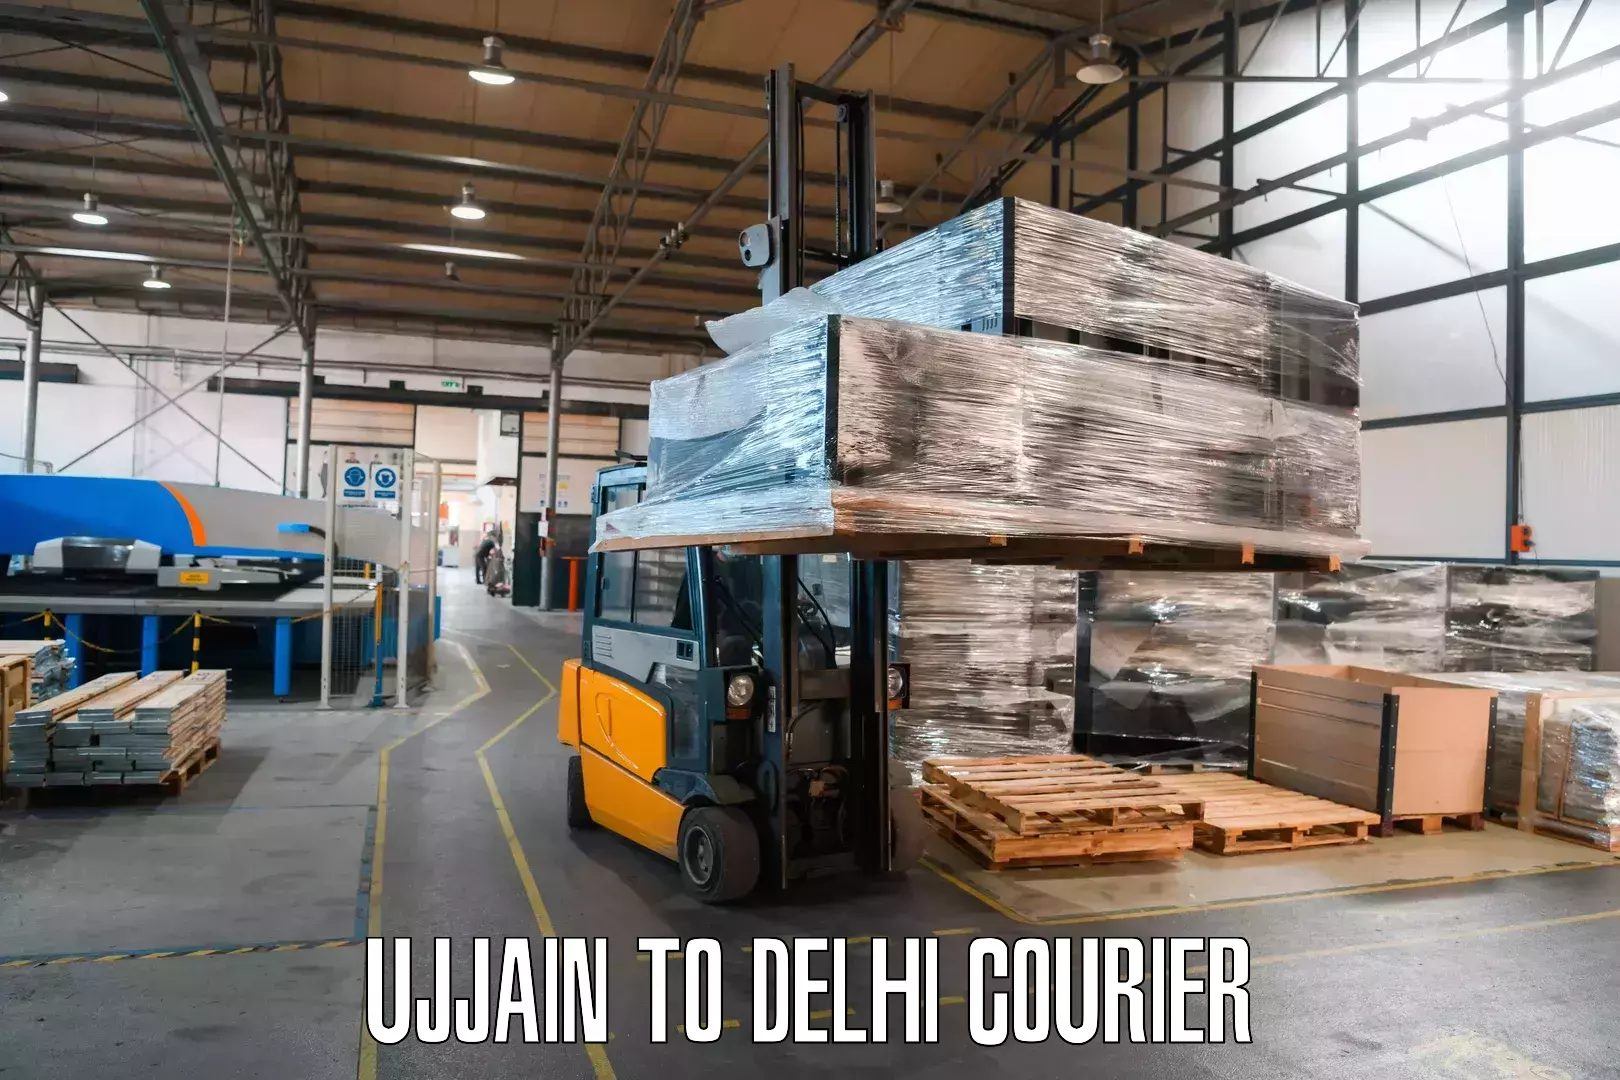 Courier dispatch services Ujjain to Jamia Millia Islamia New Delhi